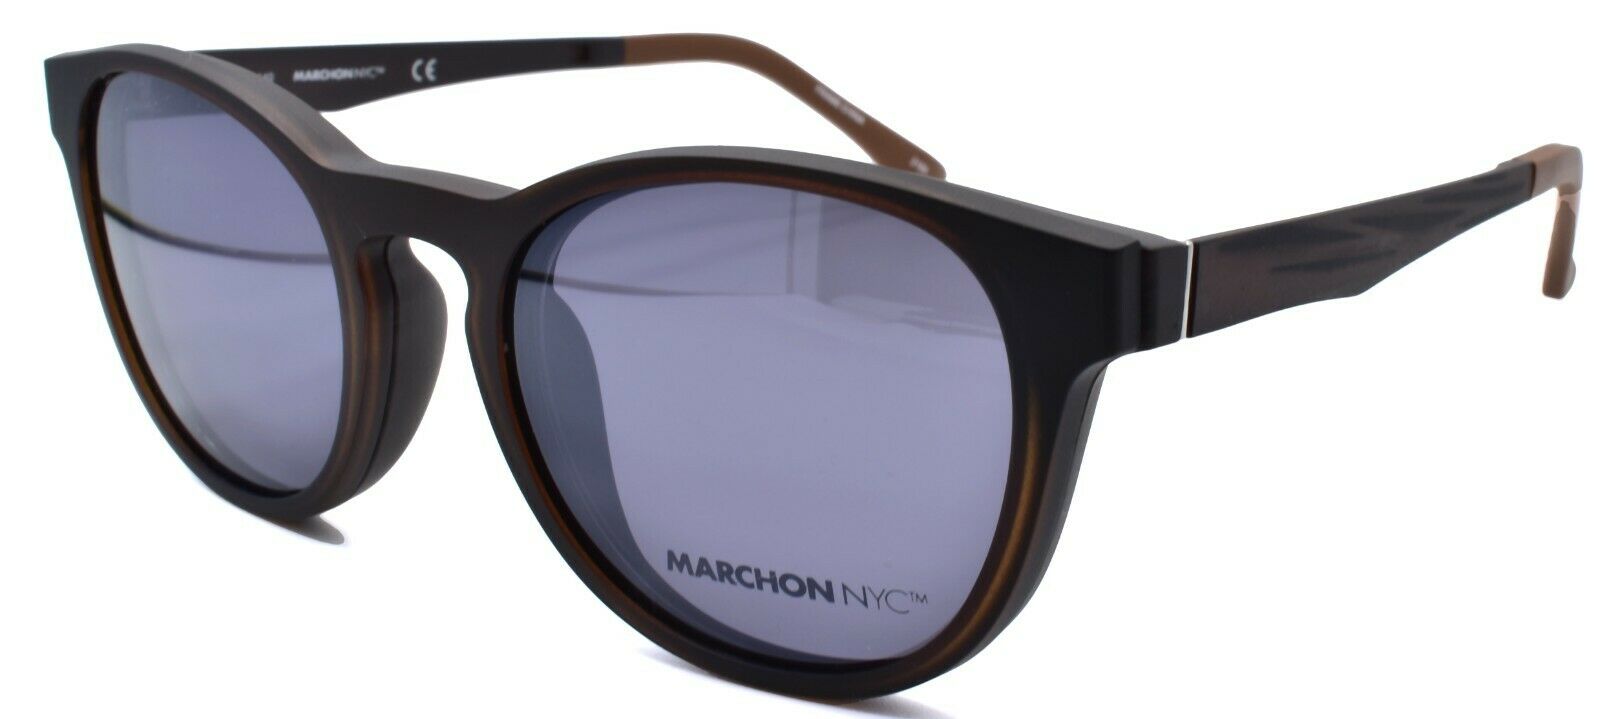 1-Marchon M-1502 210 Eyeglasses Frames 50-19-140 Matte Brown + 2 Magnetic Clip Ons-886895484367-IKSpecs